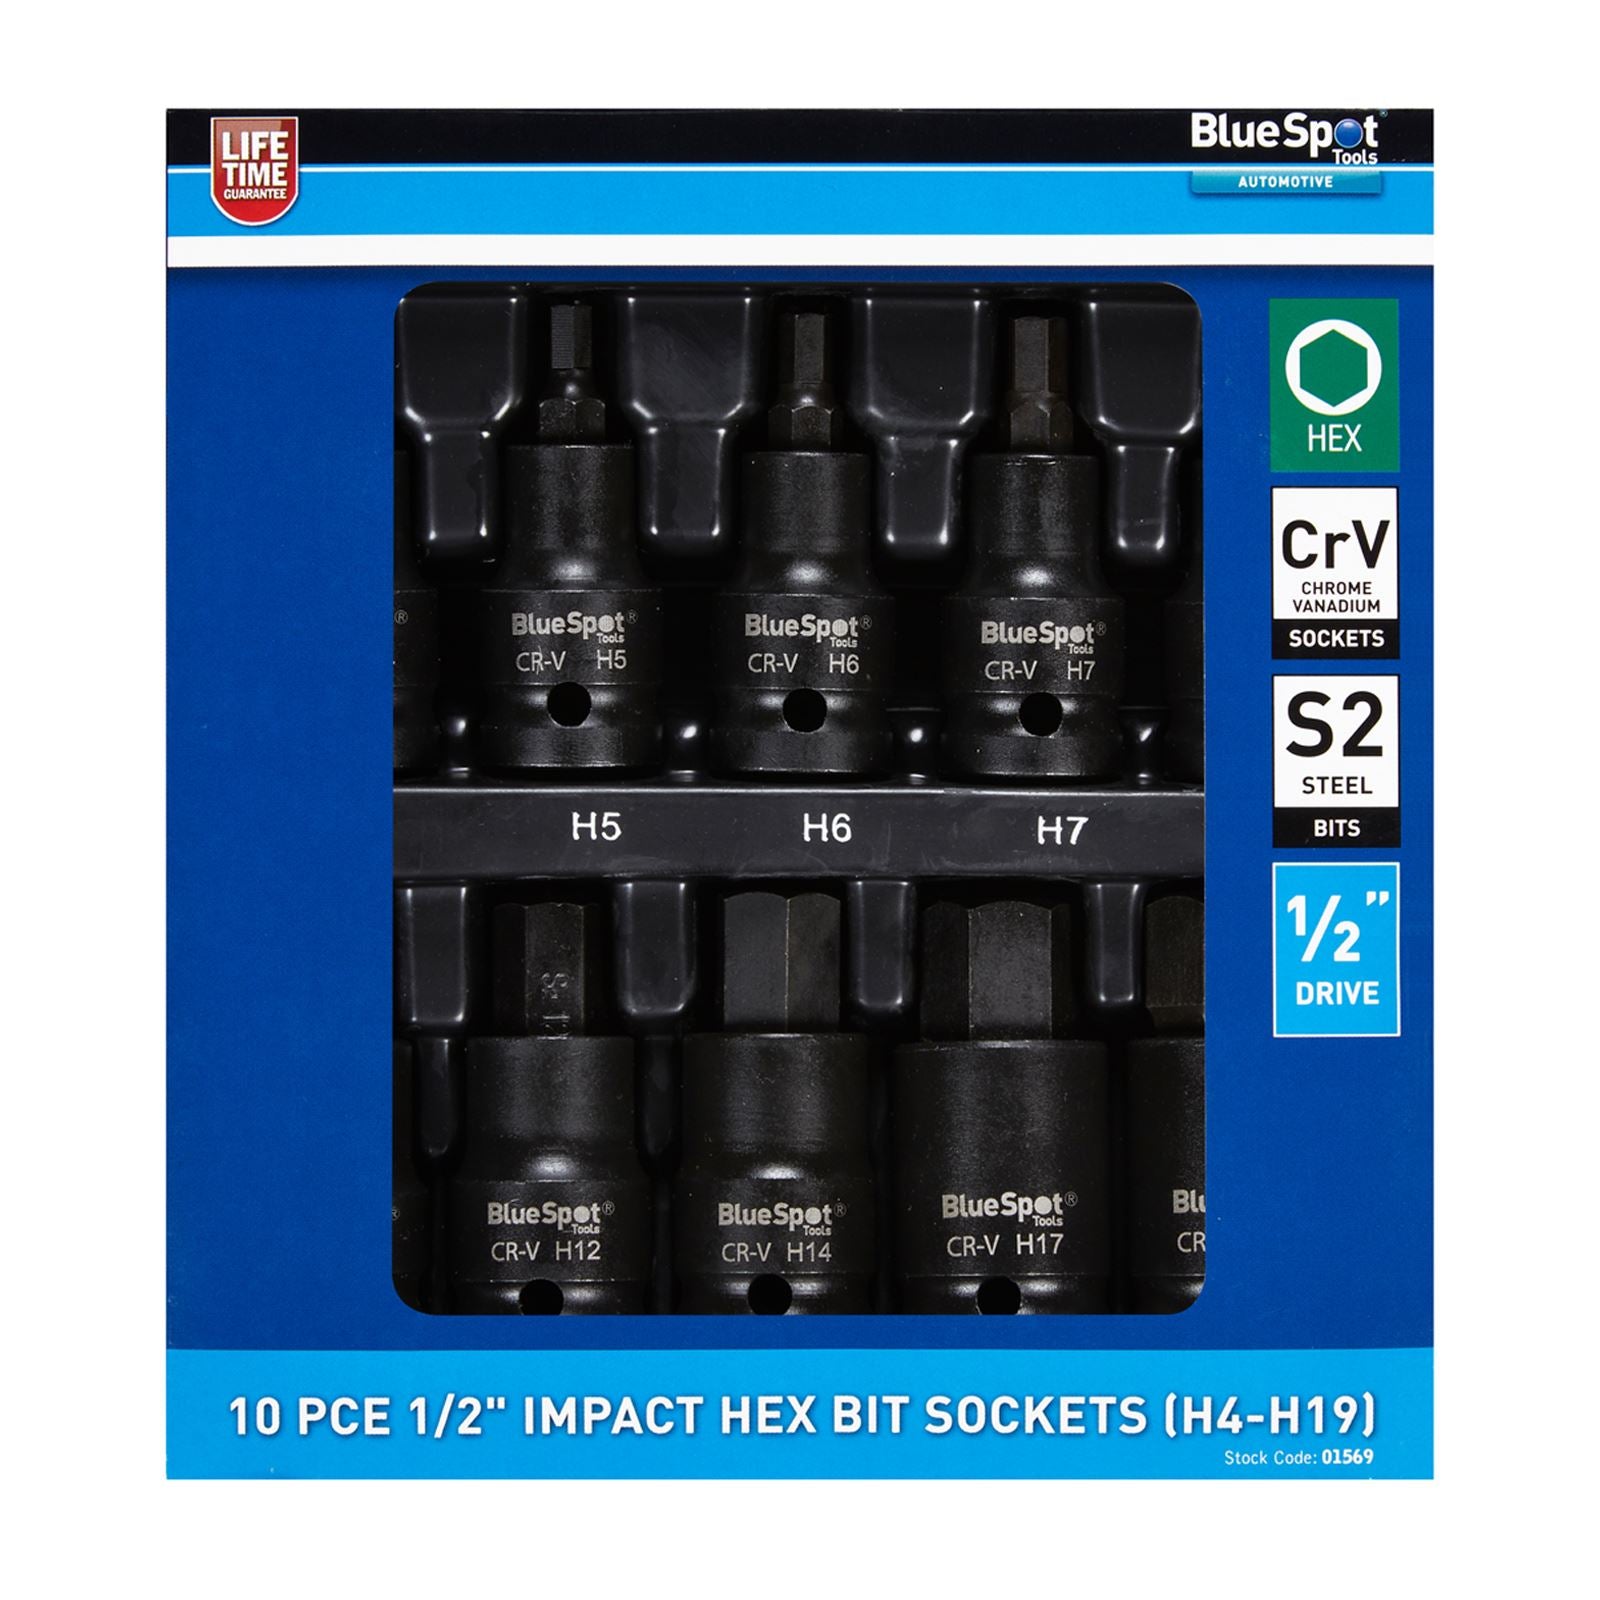 BlueSpot Impact Hex Bit Sockets 1/2" 10 Piece H4-H19